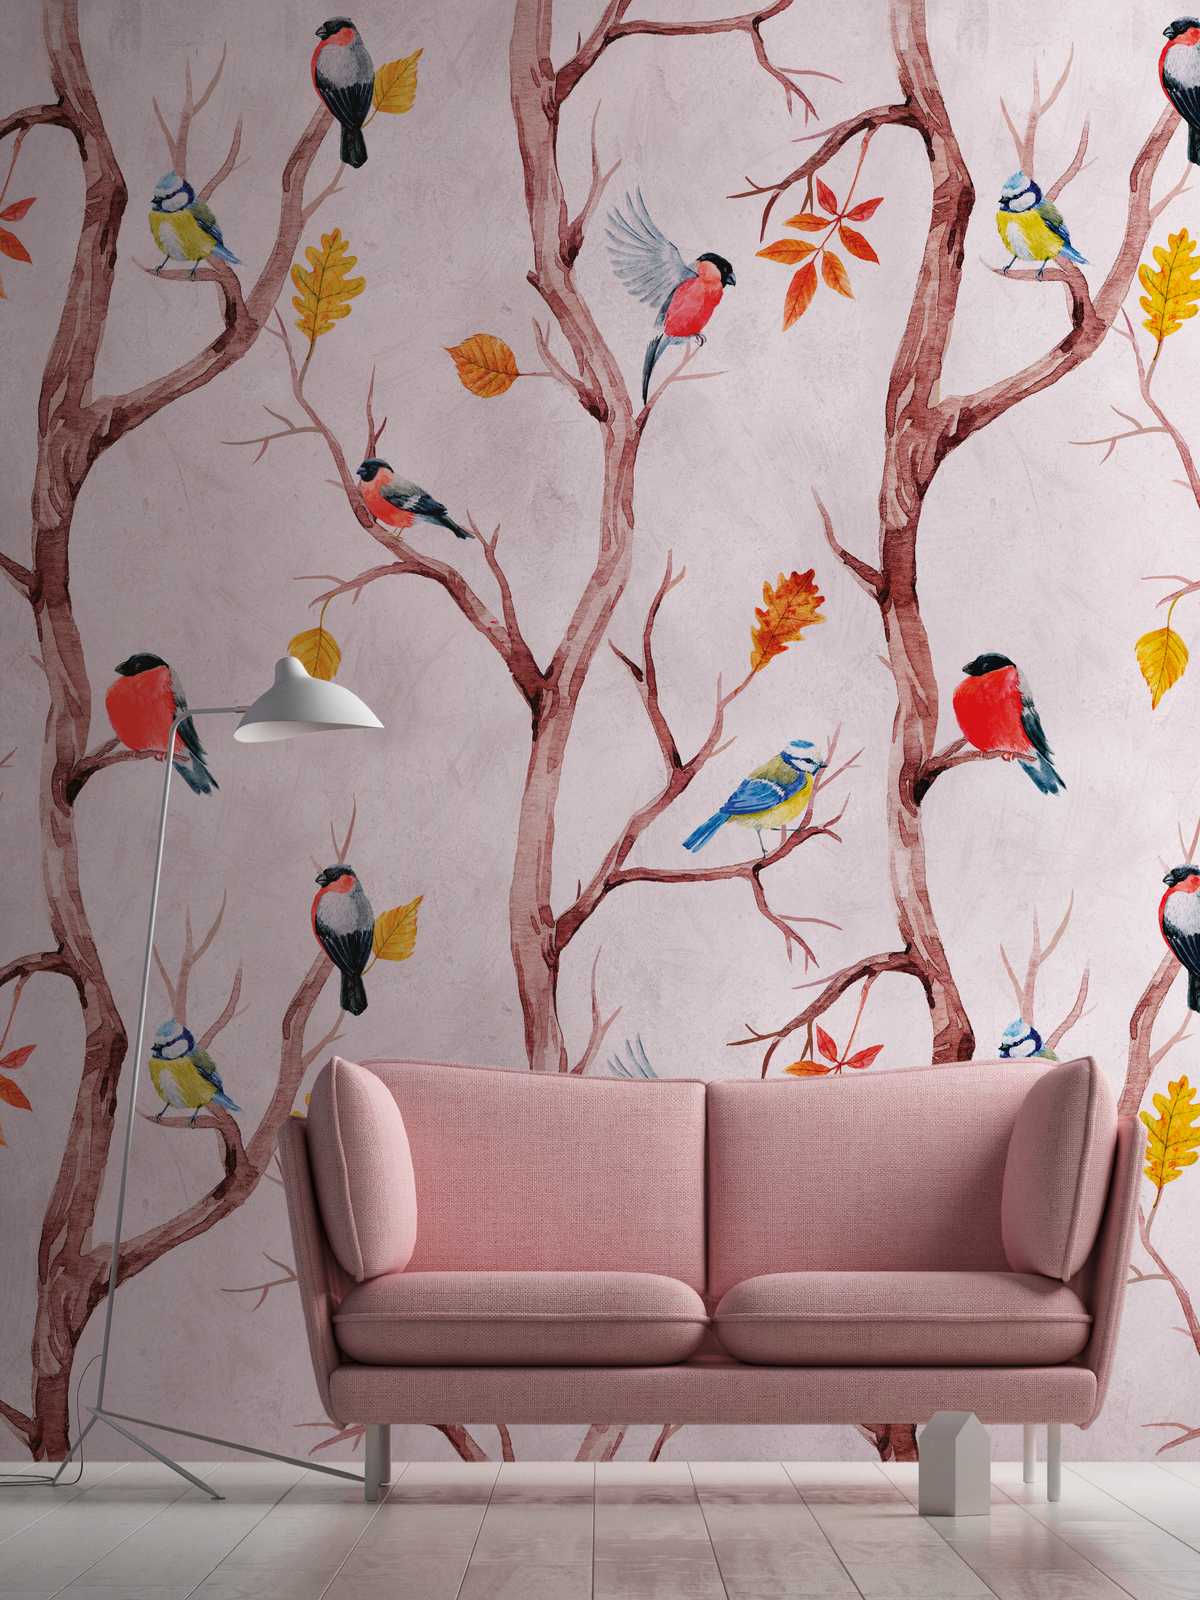             Papel pintado novedad - papel pintado con motivo de pájaros en estilo acuarela
        